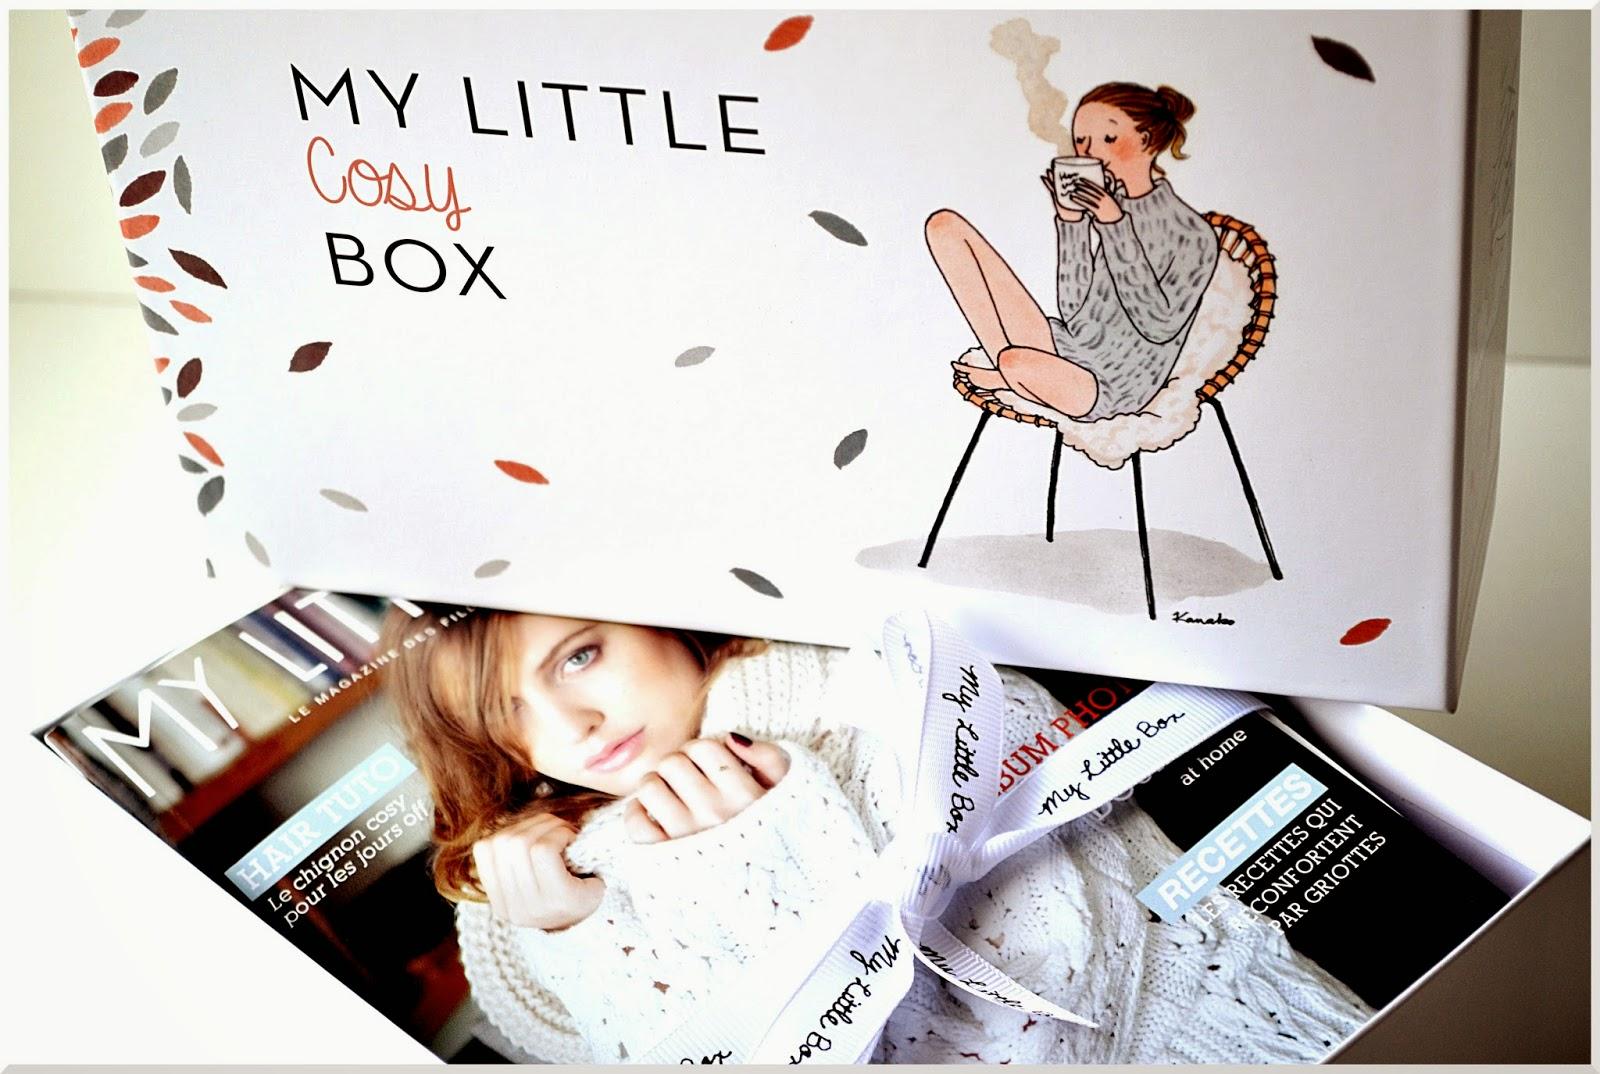 [Box] My Little Cosy Box + La Gambette box / Novembre 2014